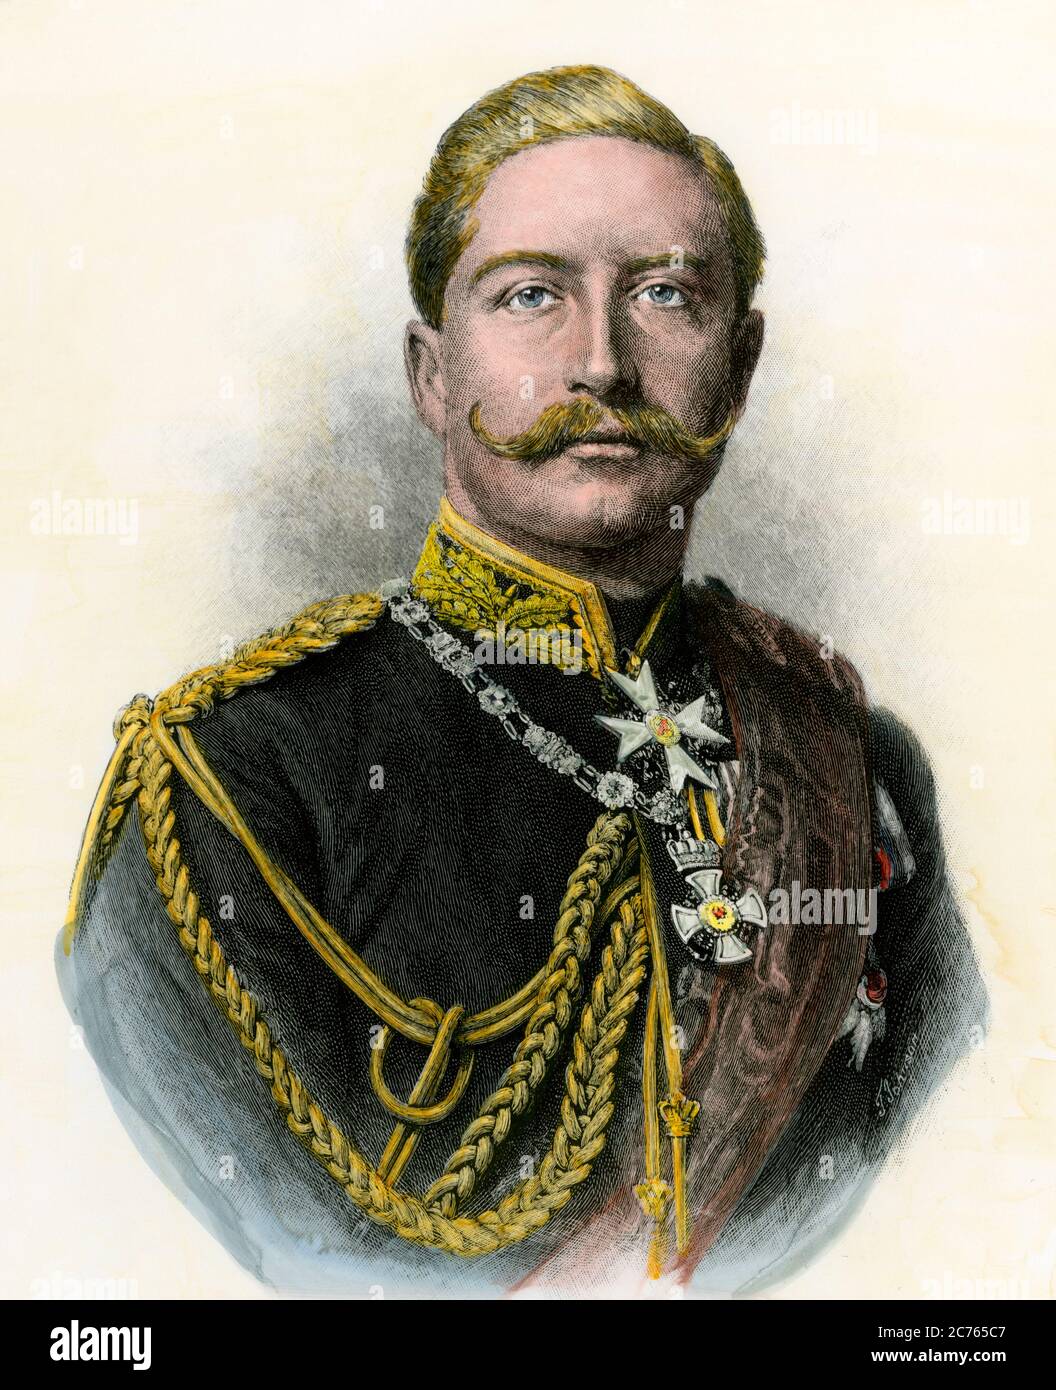 L'imperatore tedesco Guglielmo II, conosciuto come "il Kaiser". Taglio in legno colorato a mano Foto Stock